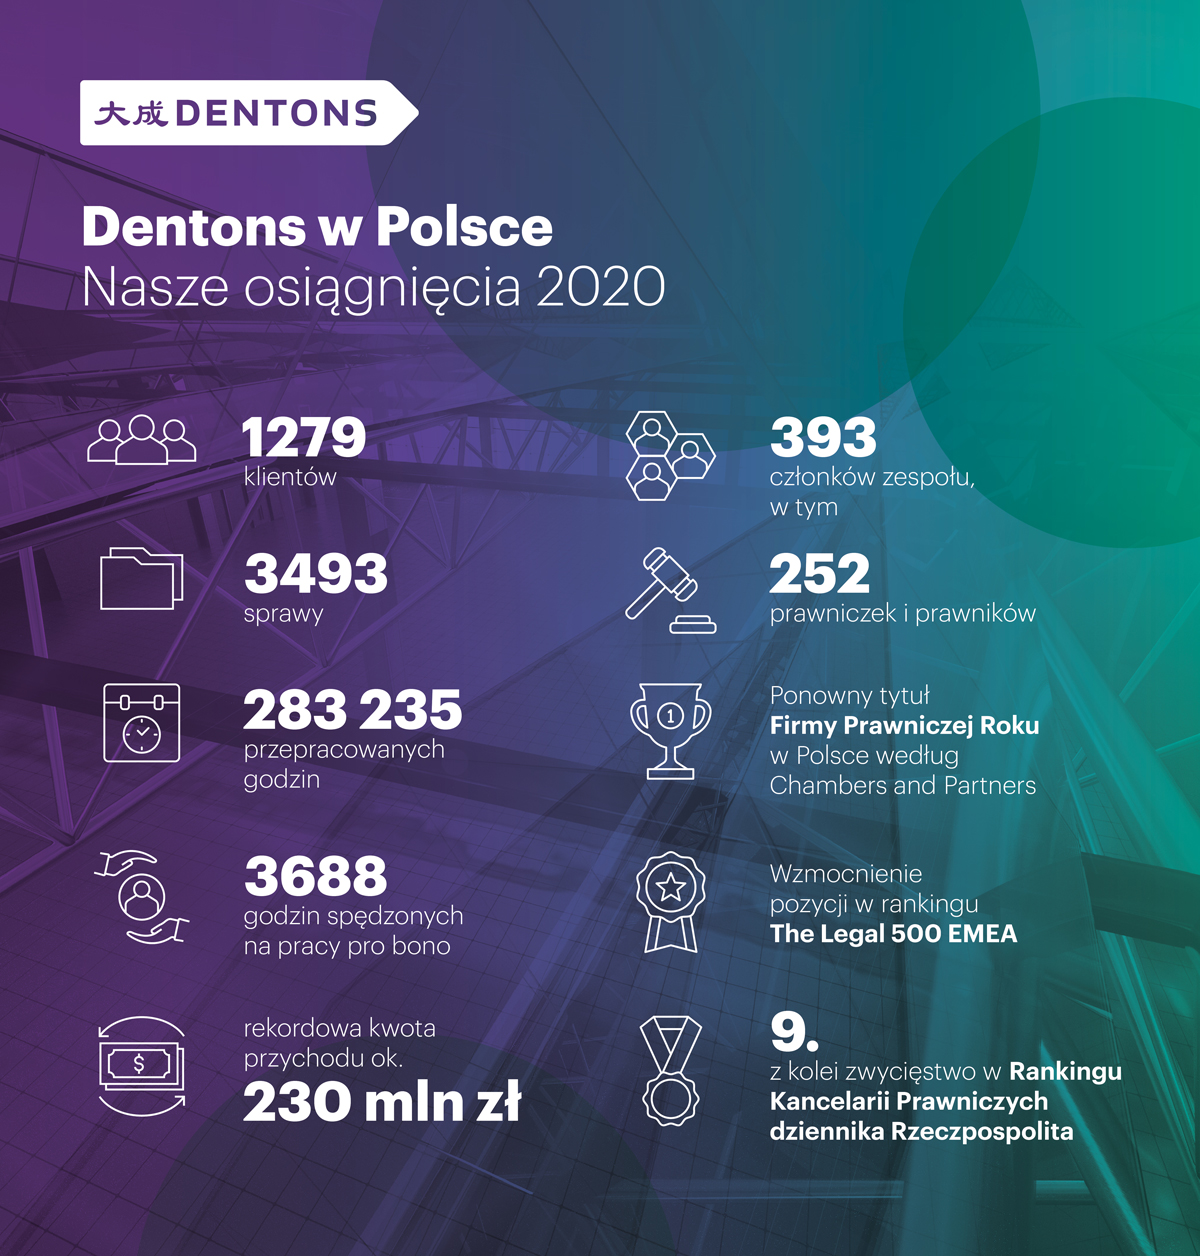 Dentons Poland top deals in 2020